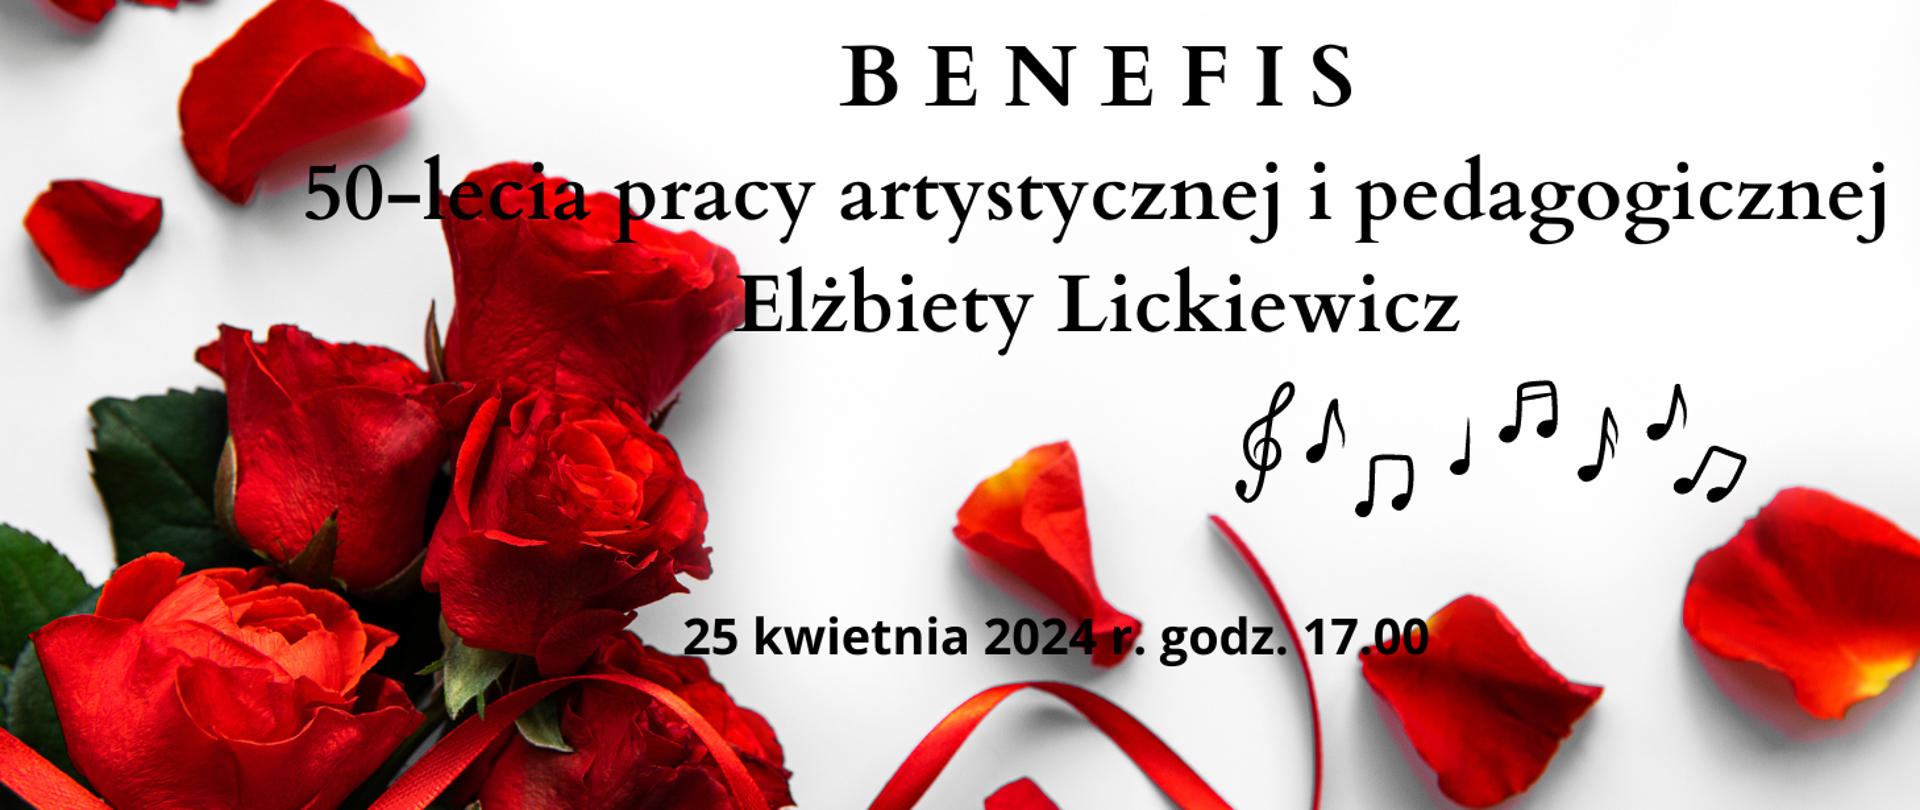 Plakat z czerwonymi różami i wstążką zapowiadający Benefis 50-lecia pracy Elżbiety Lickiewicz. Pomiędzy czerwonymi płatkami róż na białym tle w nieładzie rozmieszczone są czarne nuty ósemki i klucz wiolinowy.